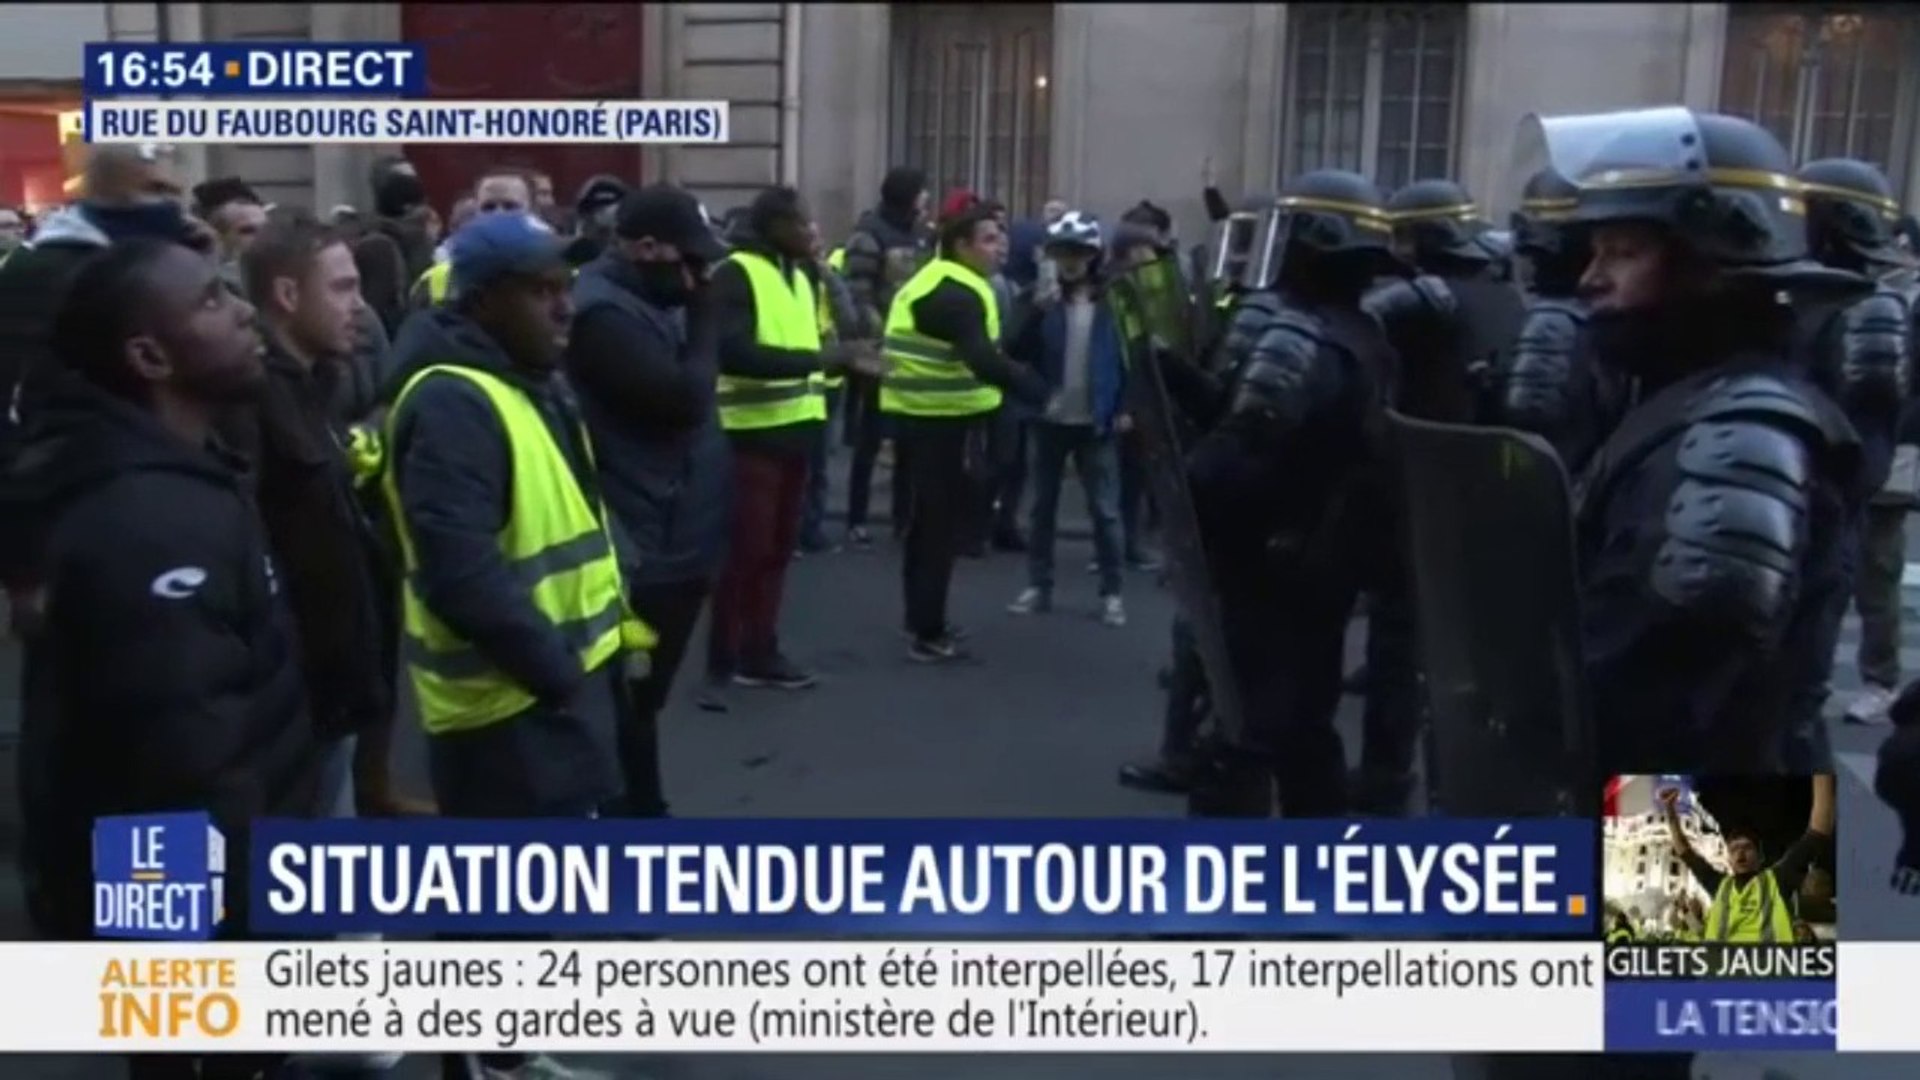 Gilets jaunes : situation tendue autour de l'Élysée - Vidéo Dailymotion